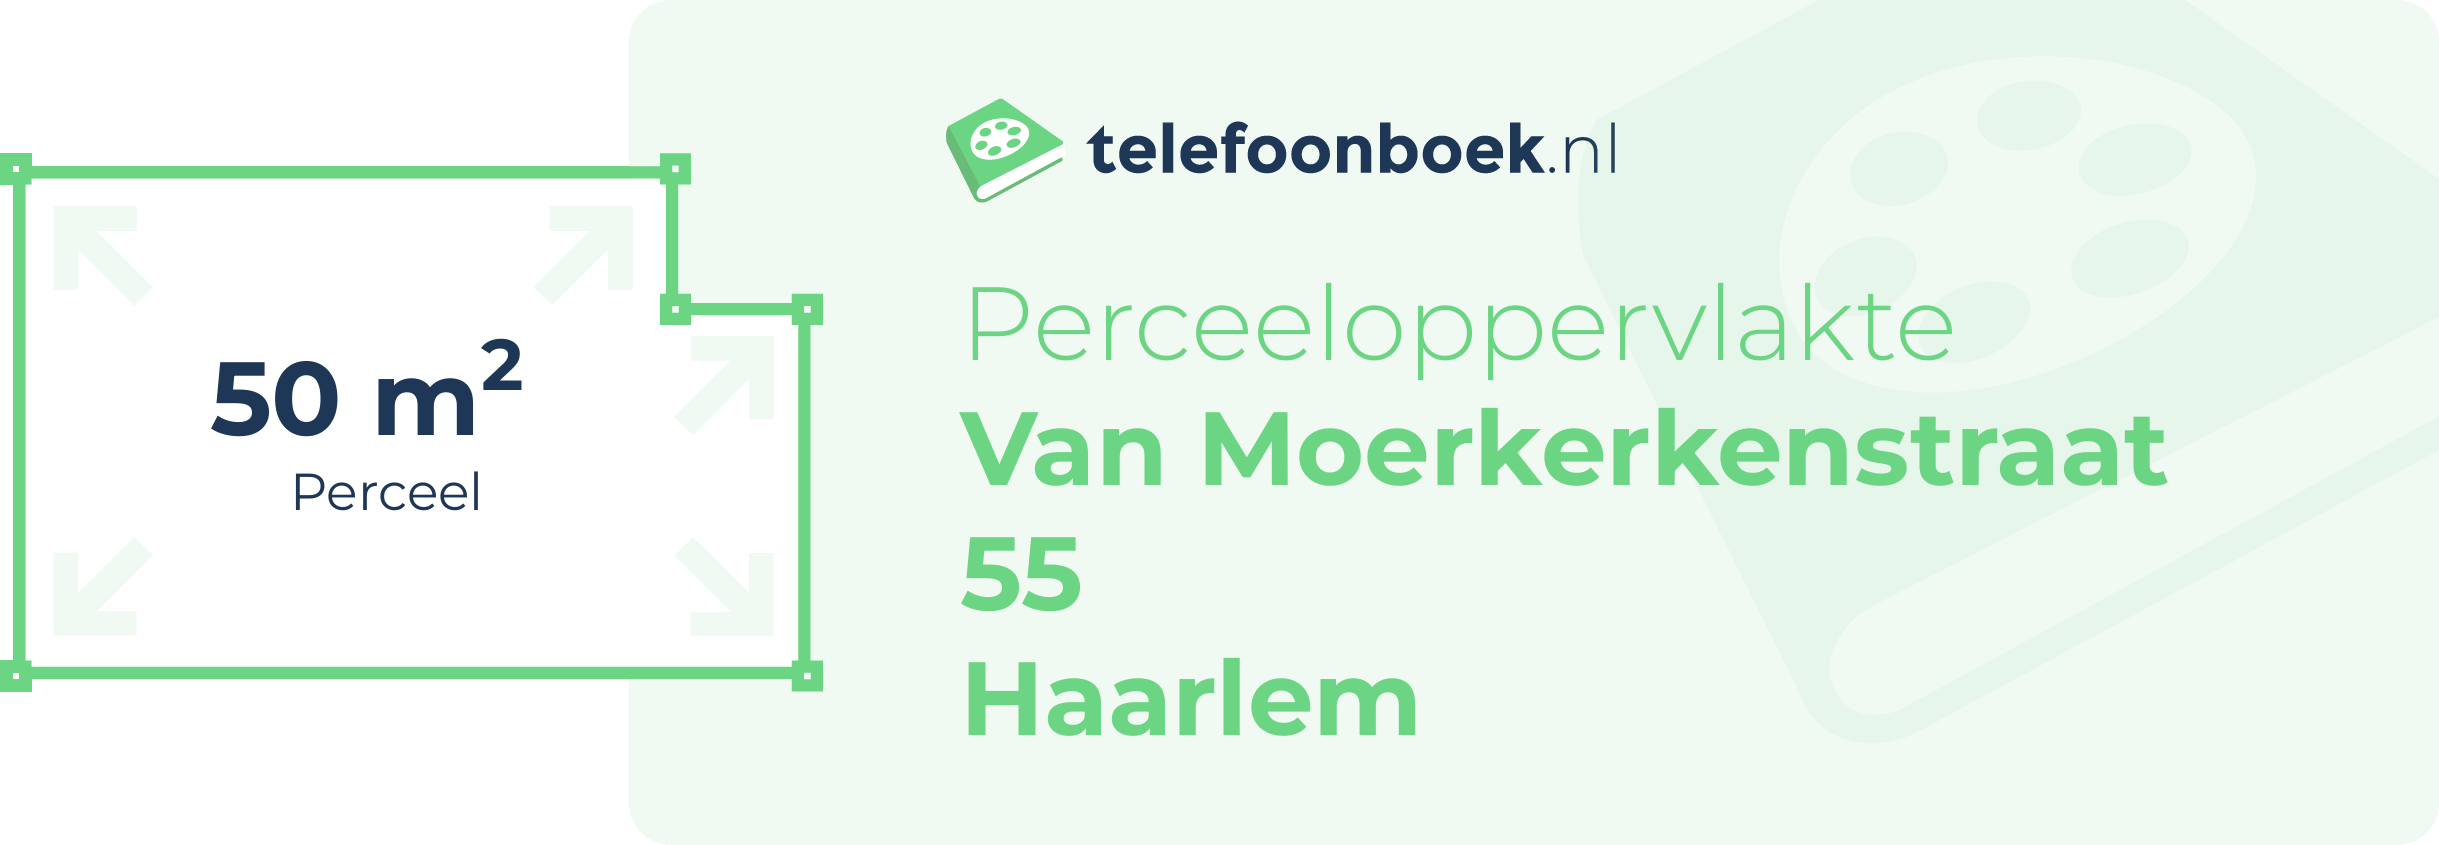 Perceeloppervlakte Van Moerkerkenstraat 55 Haarlem